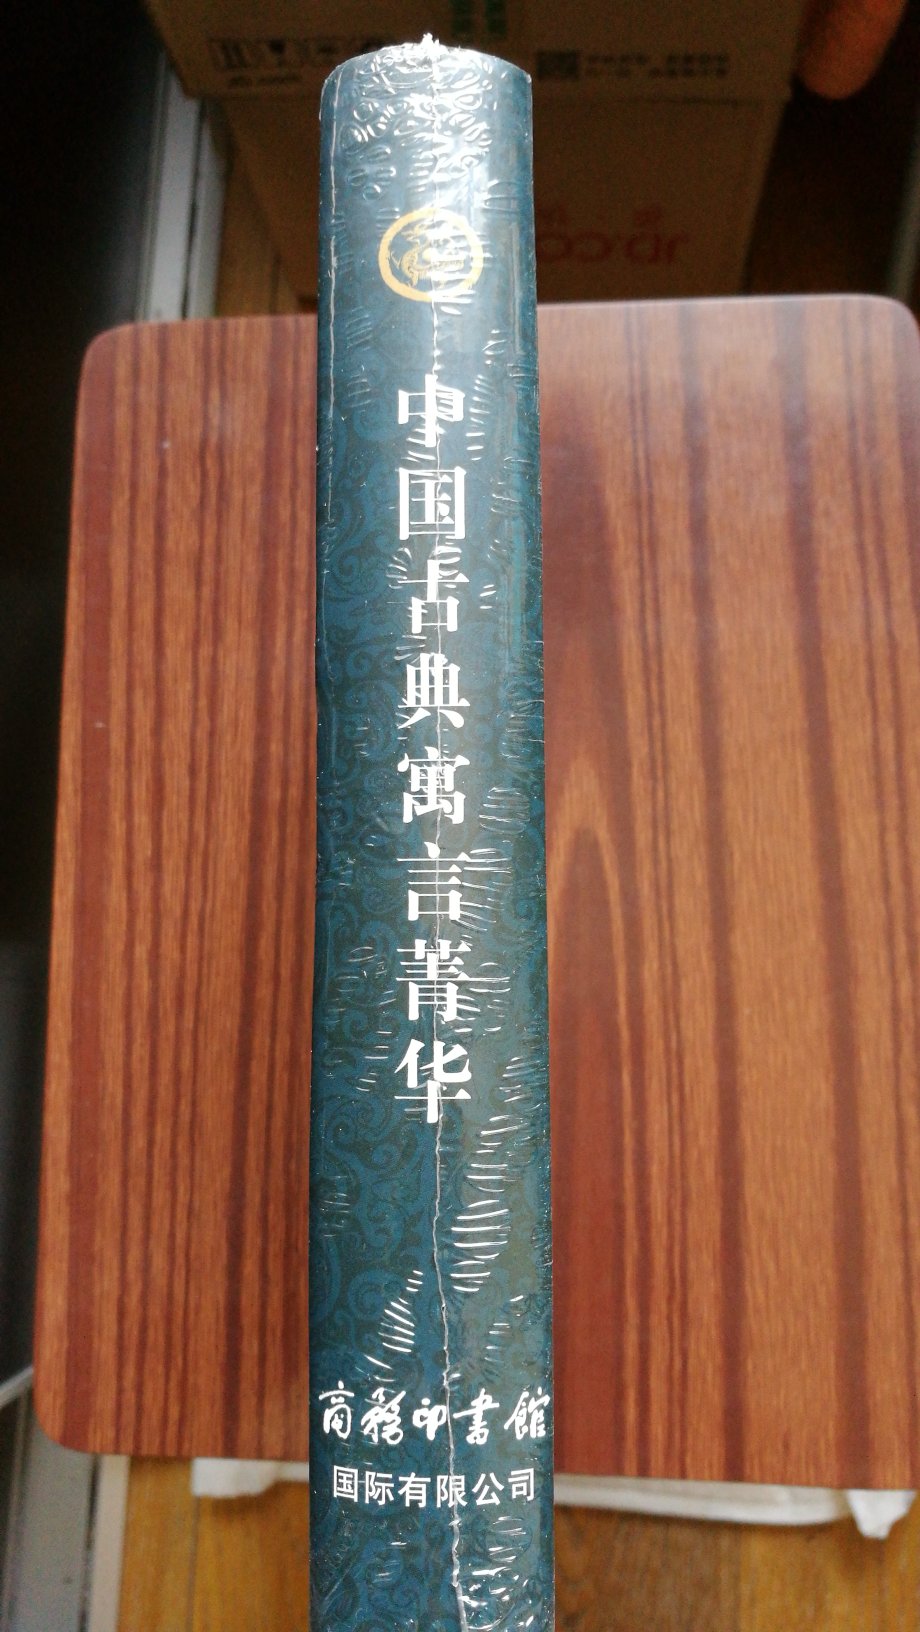 　《中国古典寓言菁华》选取了先秦两汉时期的经典寓言故事400多篇。篇目以所载寓言原书出现的时间先后为序。对所载寓言的专书及作者，均做了简要介绍。每则寓言分从说明、注释、今译等方面精细解读，方便一般读者理解。文前绪论《中国寓言文学概论》对我国古代寓言的产生和发展做了概括说明。　　《中国古典寓言菁华》可满足广大学生及大众读者对中国古代寓言的阅读和学习需求，也可供古代文学爱好者参考。